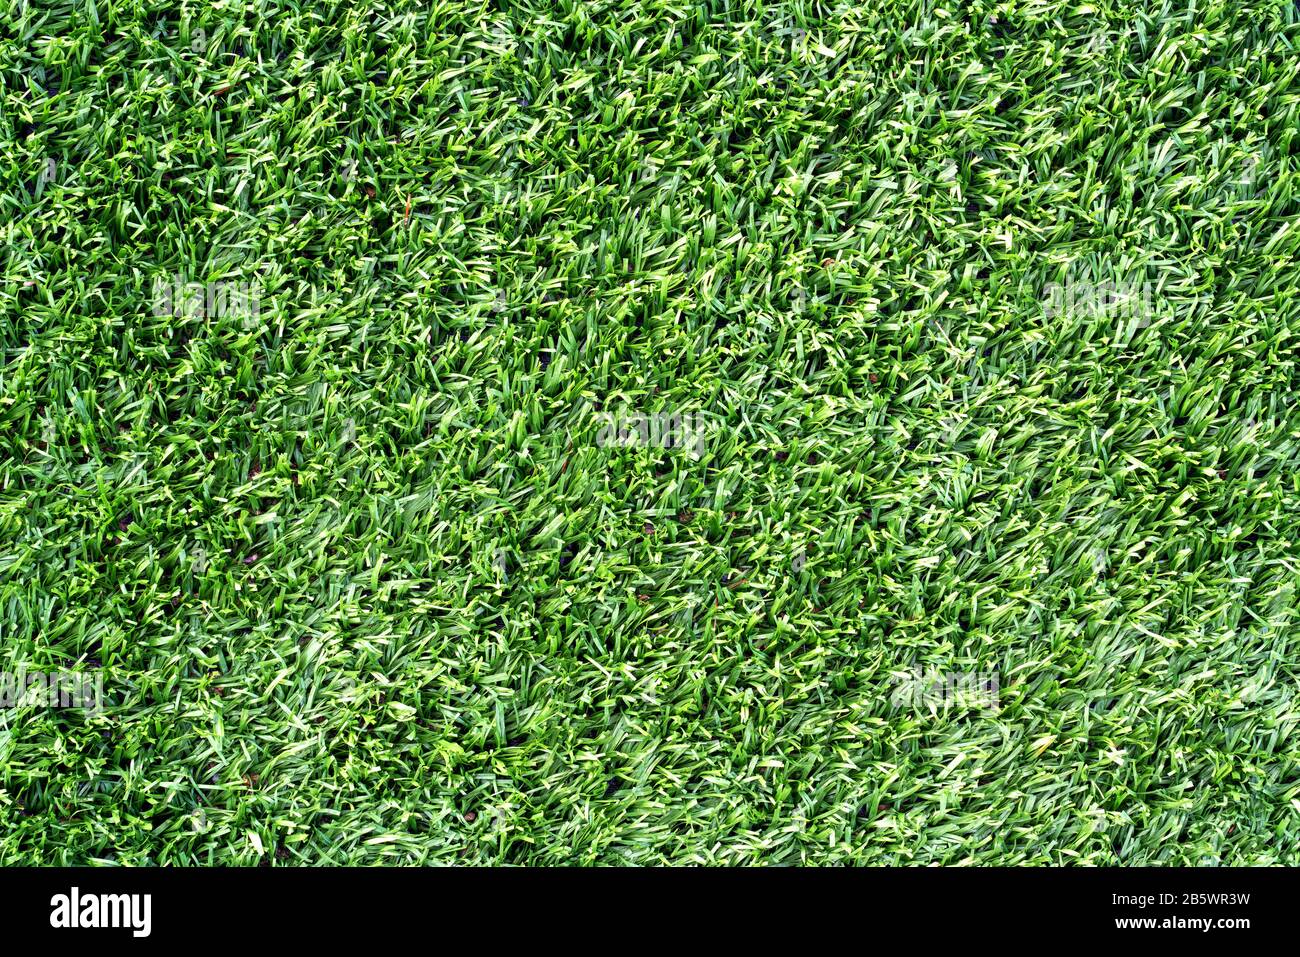 Über dem Schuss von grünem Gras oder Rasen eines Spielplatzes oder Feldes. Muster und Strukturiertes Konzept Stockfoto